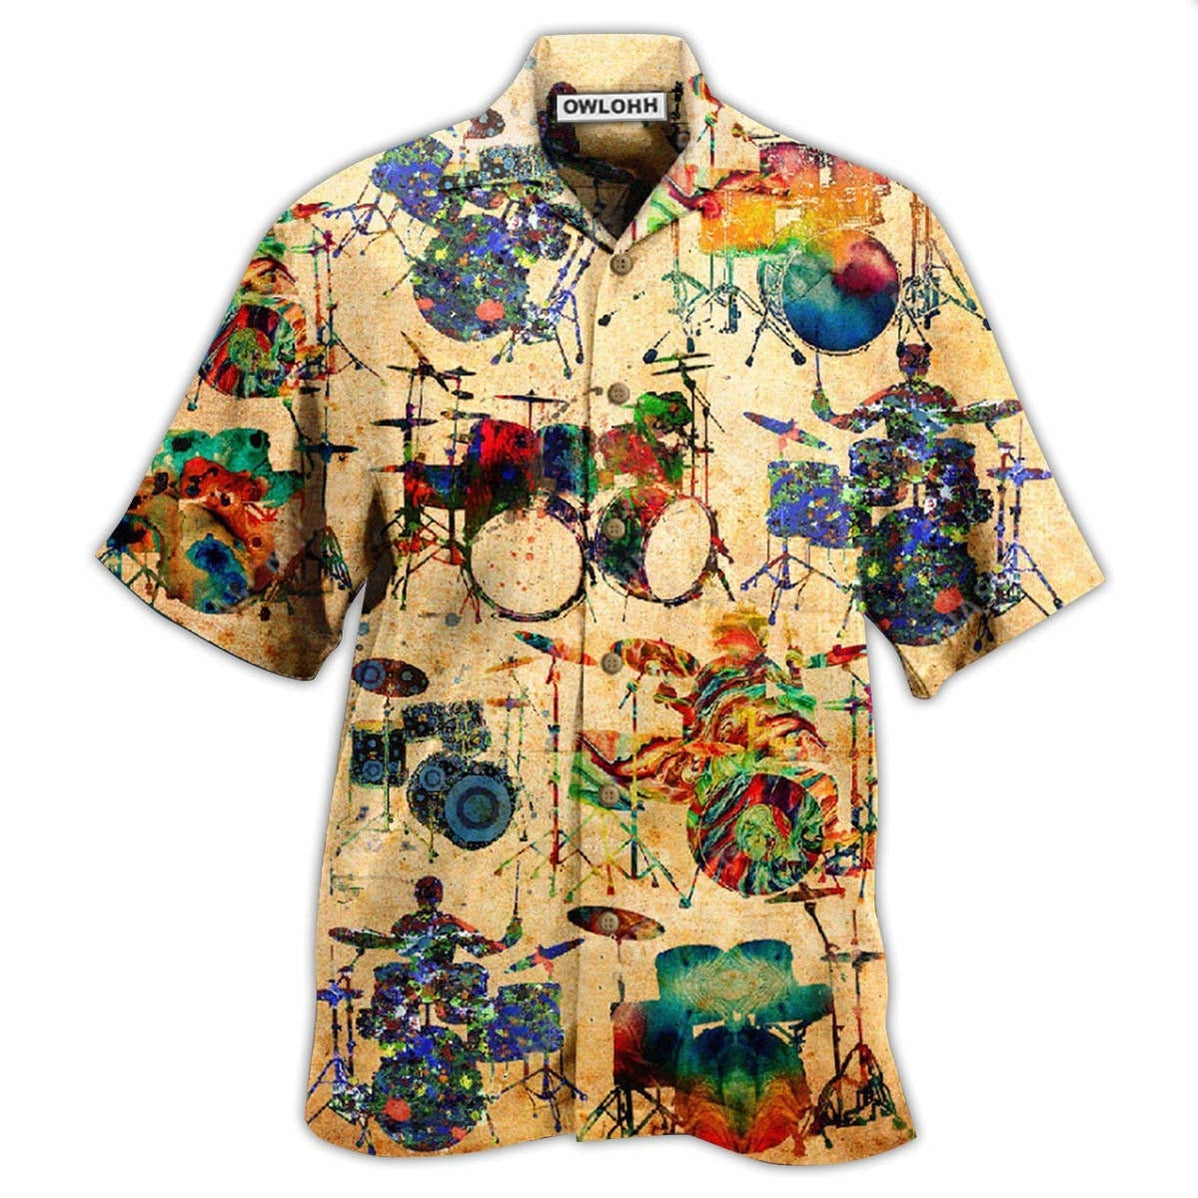 Hawaiian Shirt / Adults / S Drum Music Colorful Vintage - Hawaiian Shirt - Owls Matrix LTD